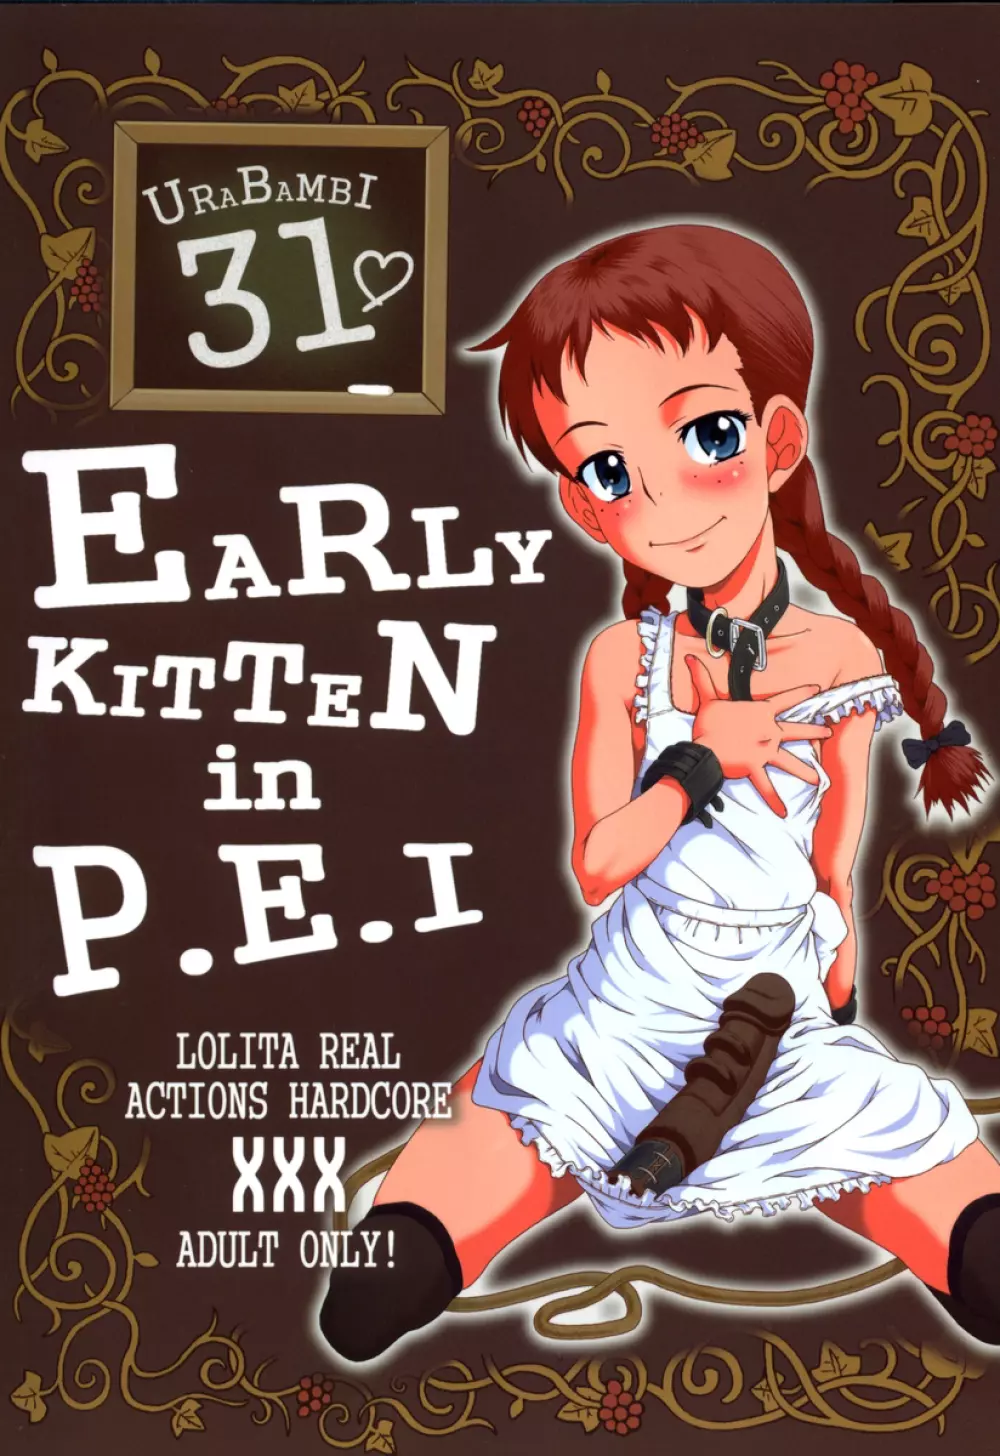 ウラバンビ Vol.31 -Early Kitten in P.E.I-